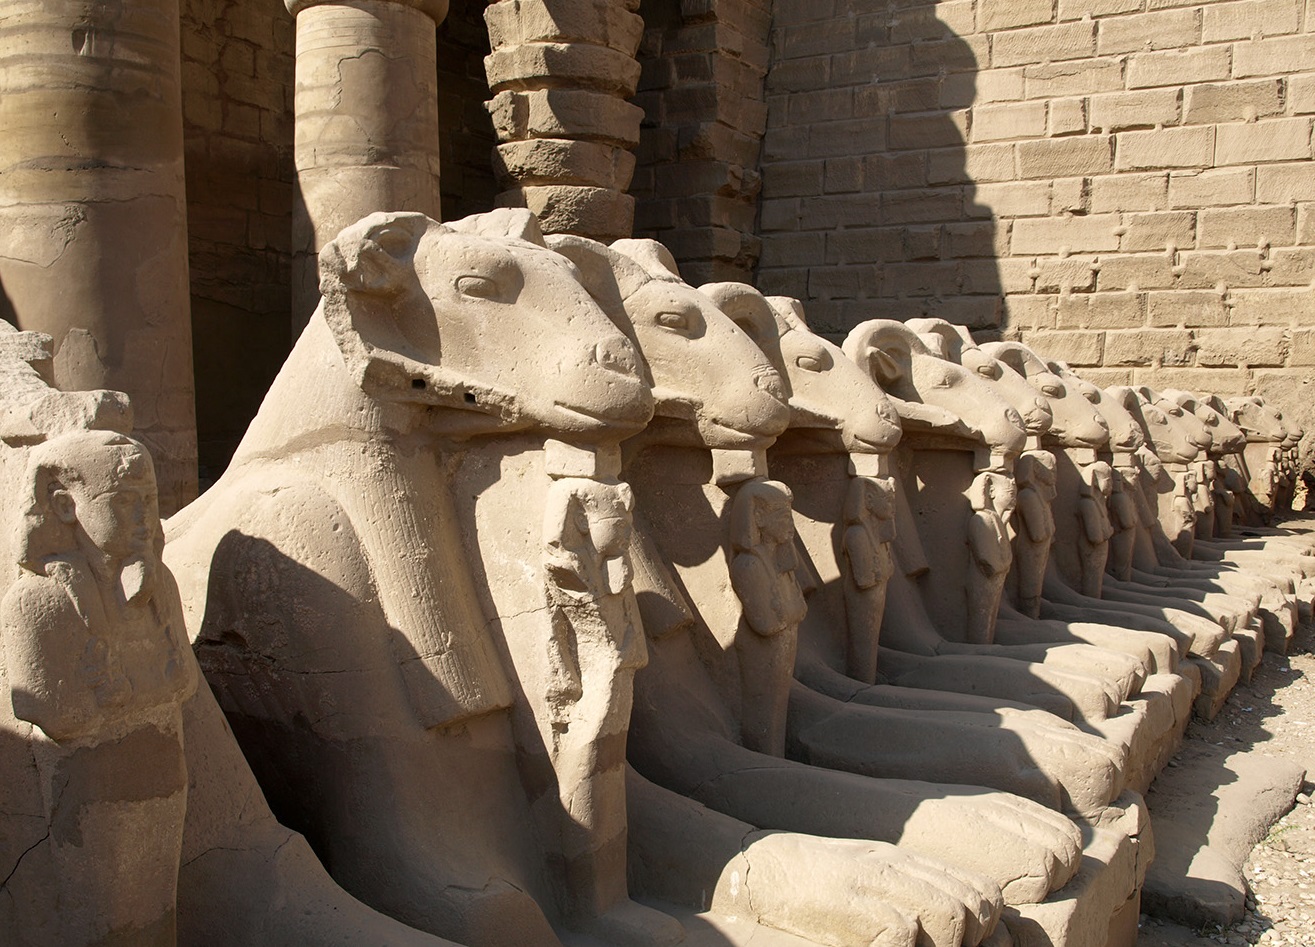 上图：建于主前2000年的古埃及卡纳克神庙（Temple of Karnak）入口的狮身公山羊像，公山羊象征古埃及最高神阿蒙-拉（Amun-Ra），站在公山羊脚前的是法老，象征最高神保护法老。多毛的公山羊是古实（Kush）的主神，埃及征服古实之后，认为古实主神就是太阳神阿蒙-拉，从此公山羊成为阿蒙-拉的化身之一。由于公山羊是多产的象征，所以公山羊形状的阿蒙神又与男性生殖神敏（Min）组合成阿蒙-敏（Amun-Min），进而演化成希腊淫乱的山羊神潘（Pan）。库努牡神（Khnum）也长着一个公羊头。